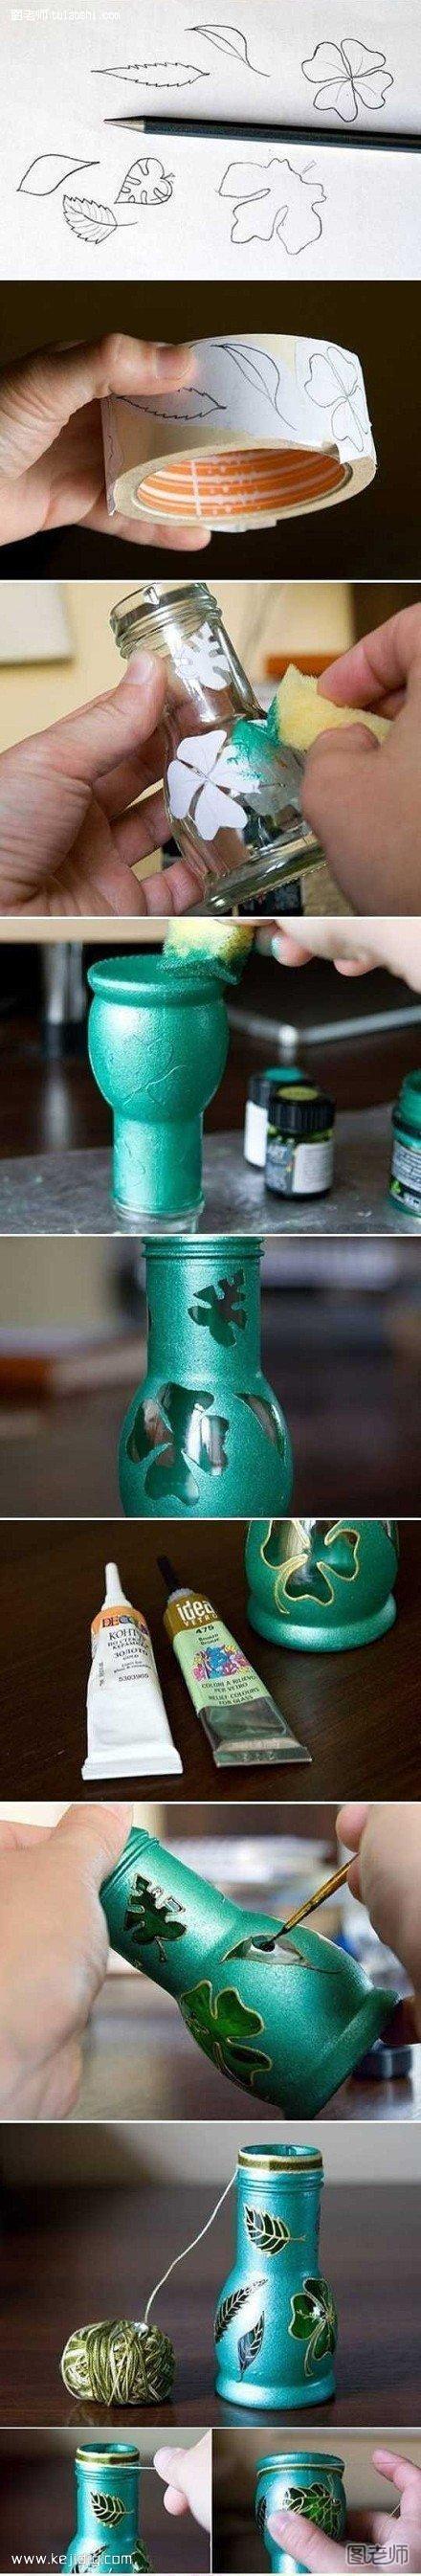 玻璃瓶废物利用制作漂亮花瓶- www.kejidiy.com